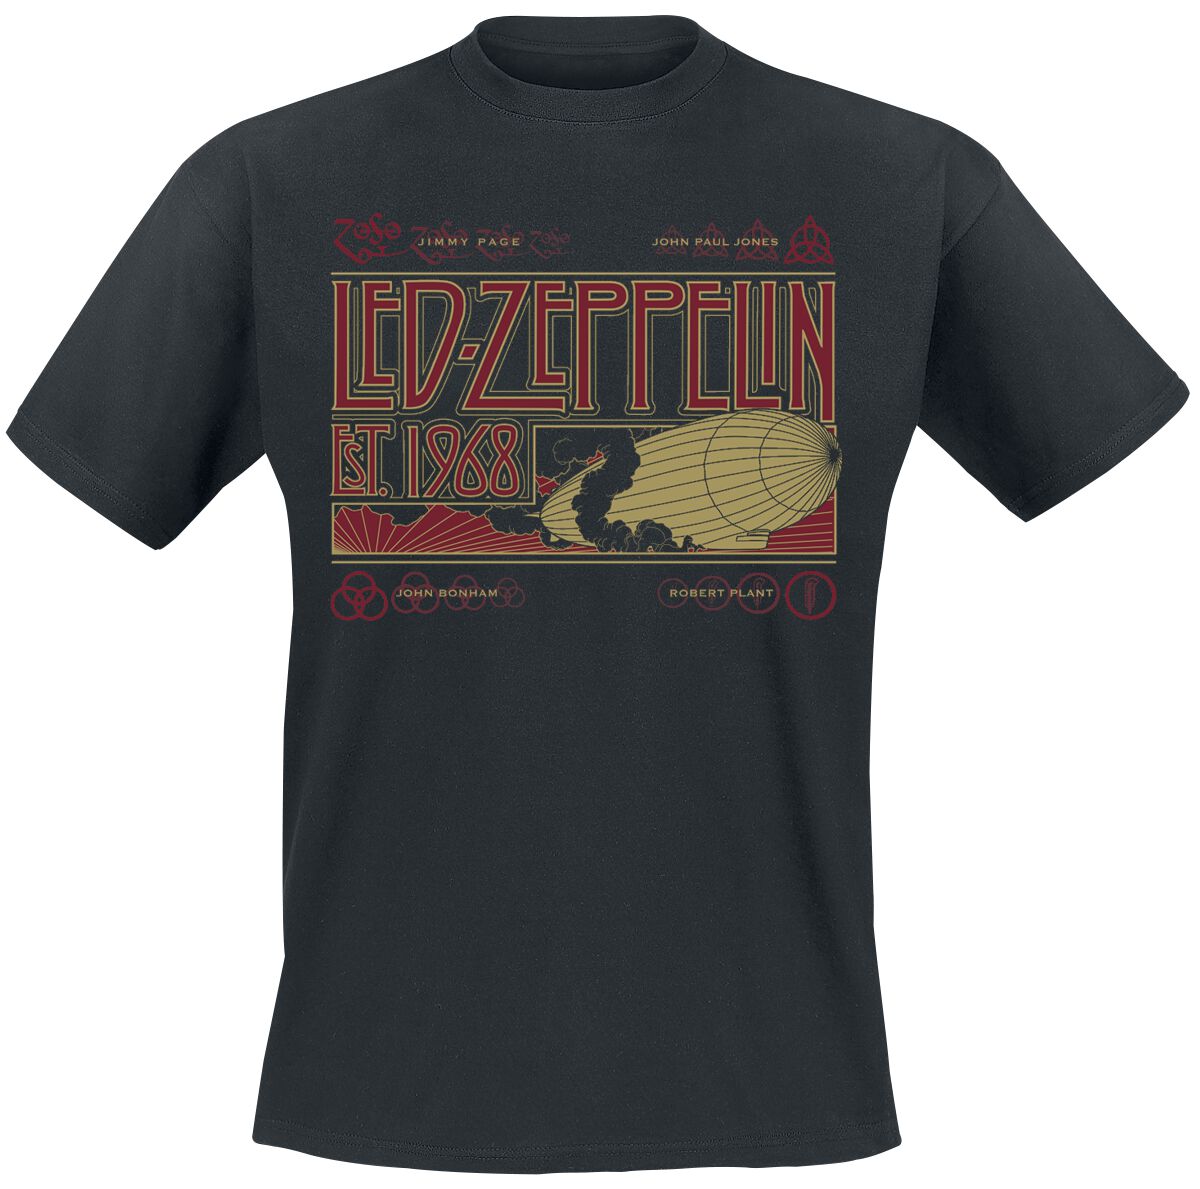 Led Zeppelin T-Shirt - Zeppelin & Smoke - M bis 3XL - für Männer - Größe 3XL - schwarz  - Lizenziertes Merchandise!